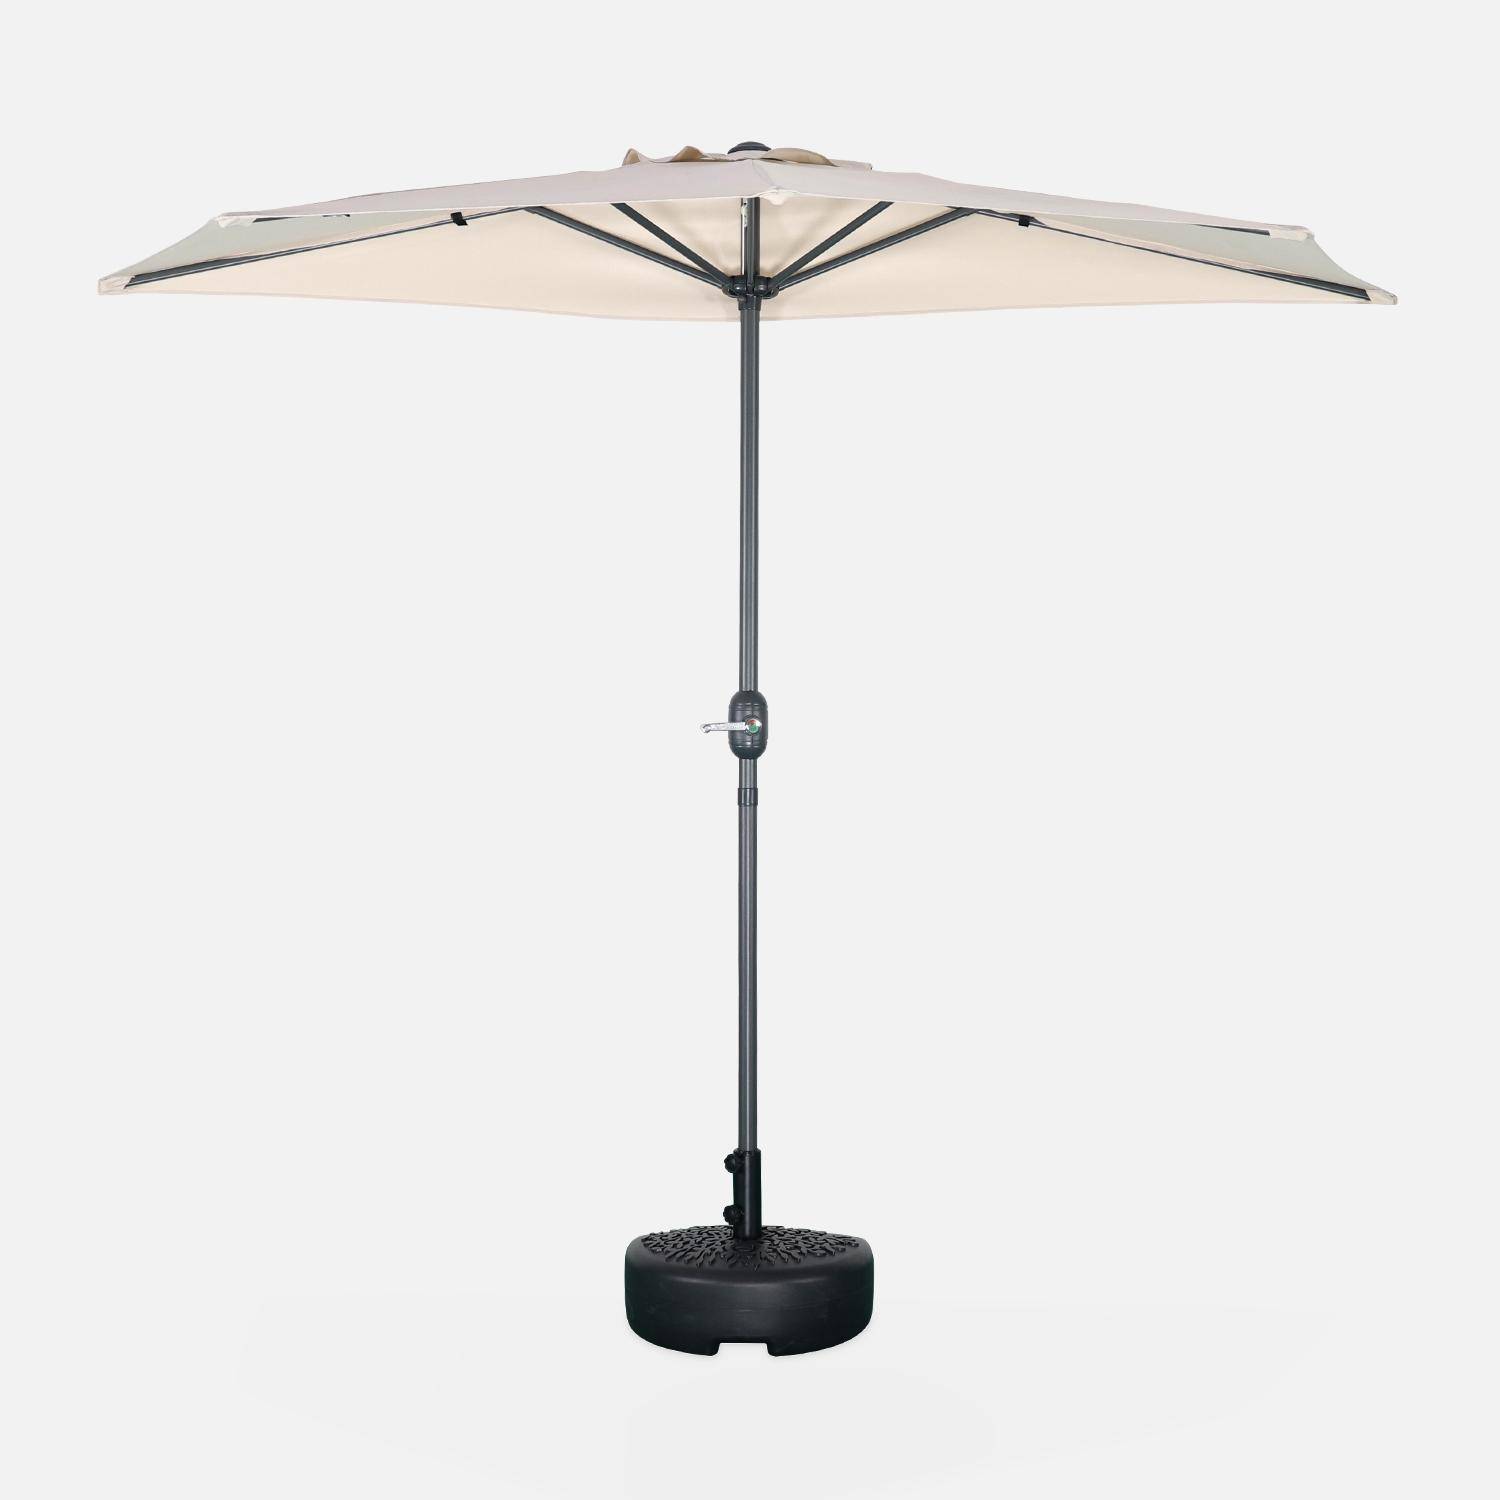 Ombrellone da balcone Ø250cm - CALVI - Mezzo ombrellone dritto, palo in alluminio con manovella, telo colore sabbia Photo3